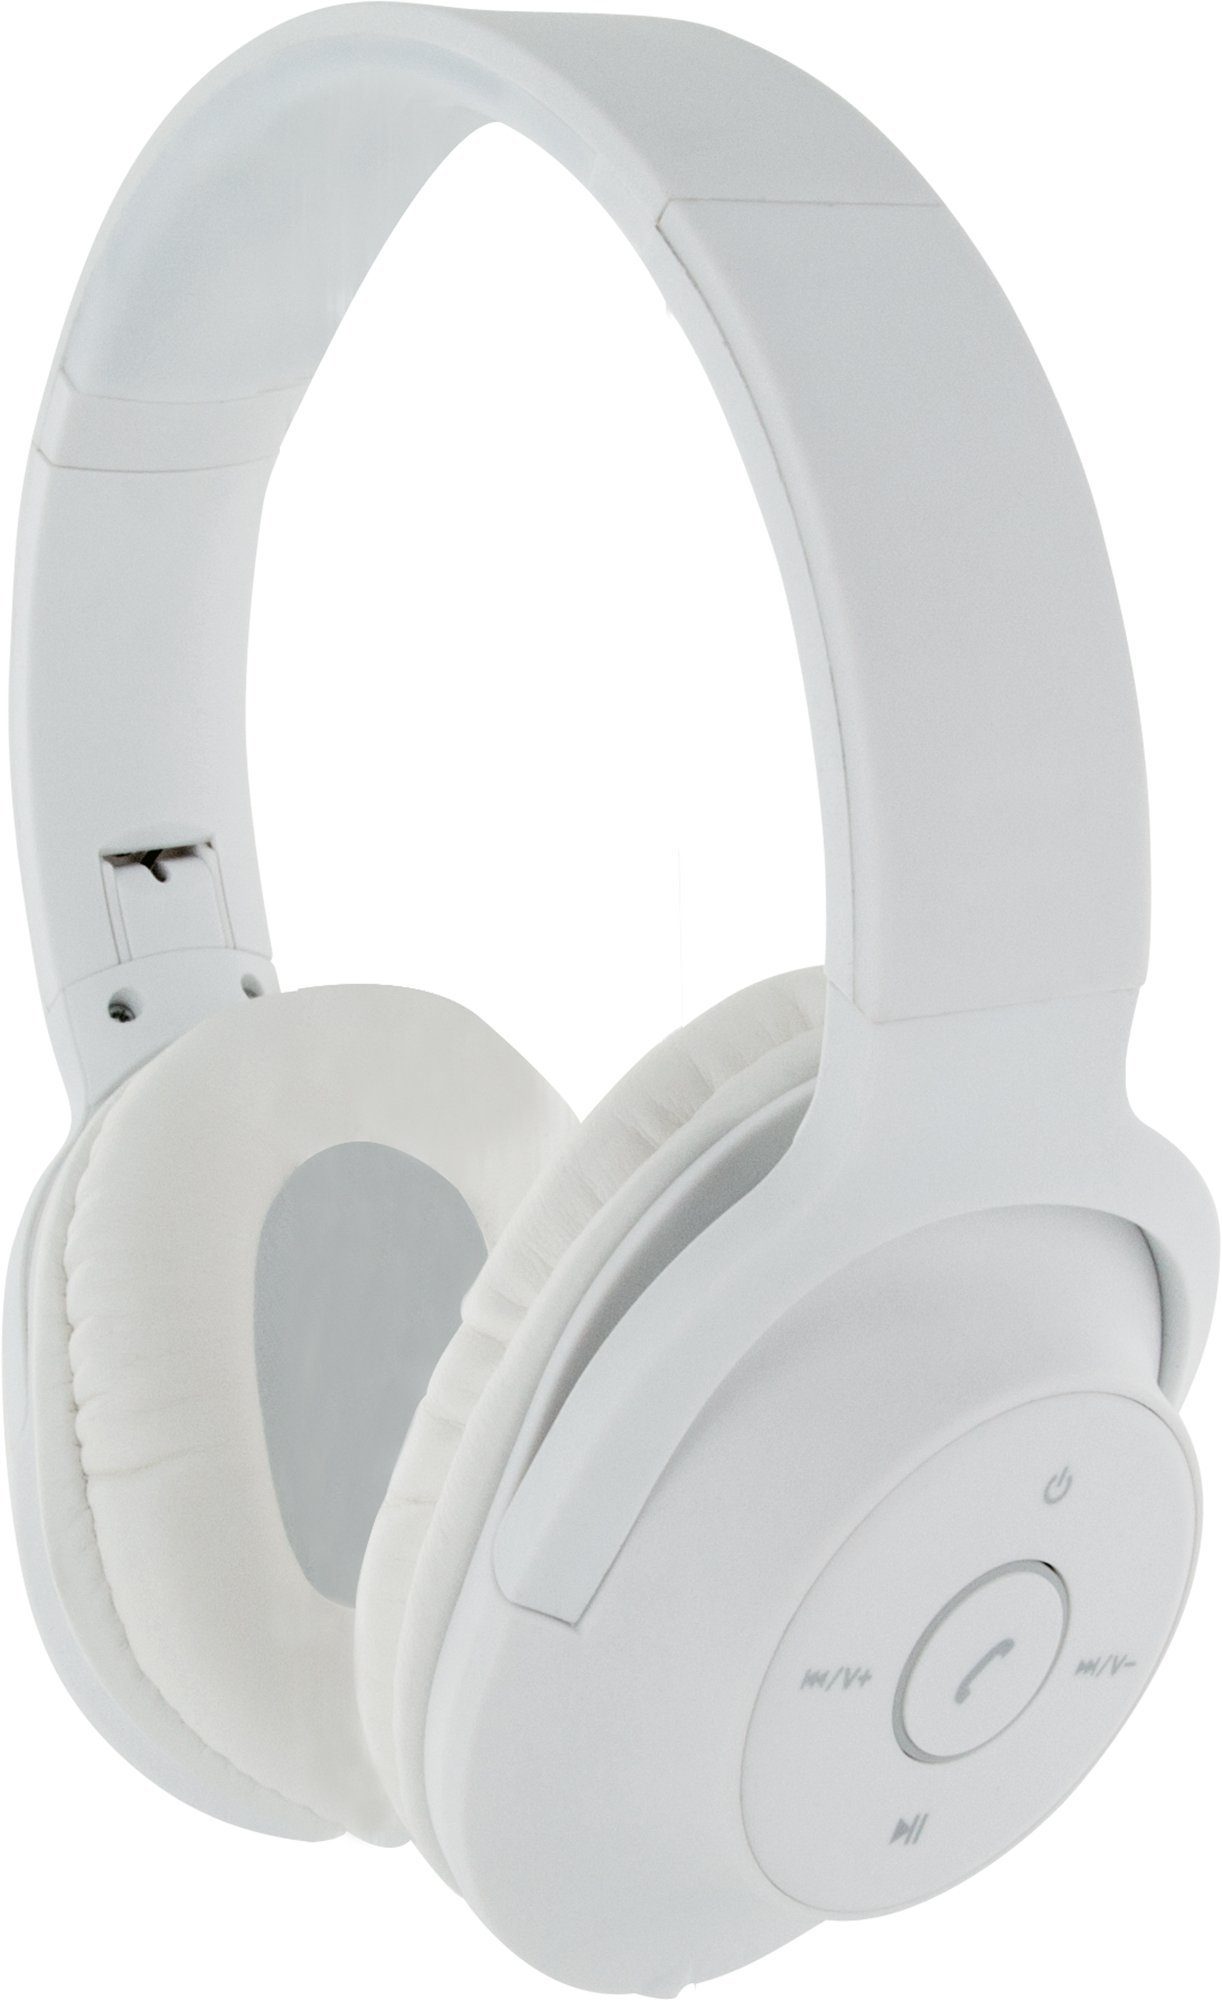 Schwaiger KH220BTW 512 einstellbare Kopfhörerbügel) Weiß (Bluetooth, Bluetooth-Kopfhörer